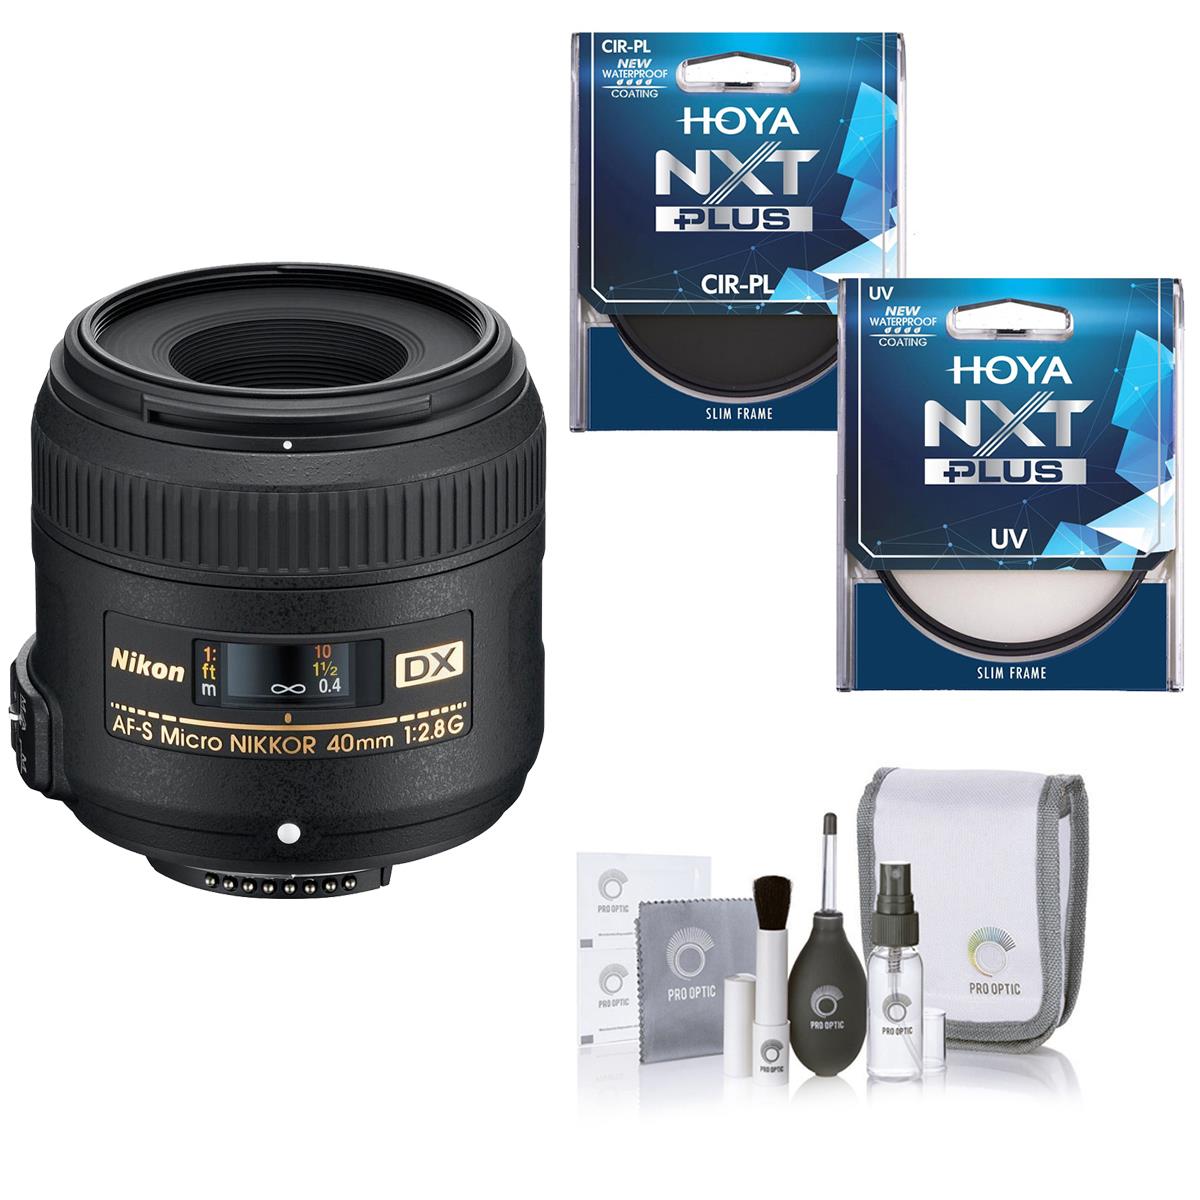 

Nikon 40mm f/2.8G DX AF-S Micro NIKKOR Lens with Hoya UV+CPL Filter Kit